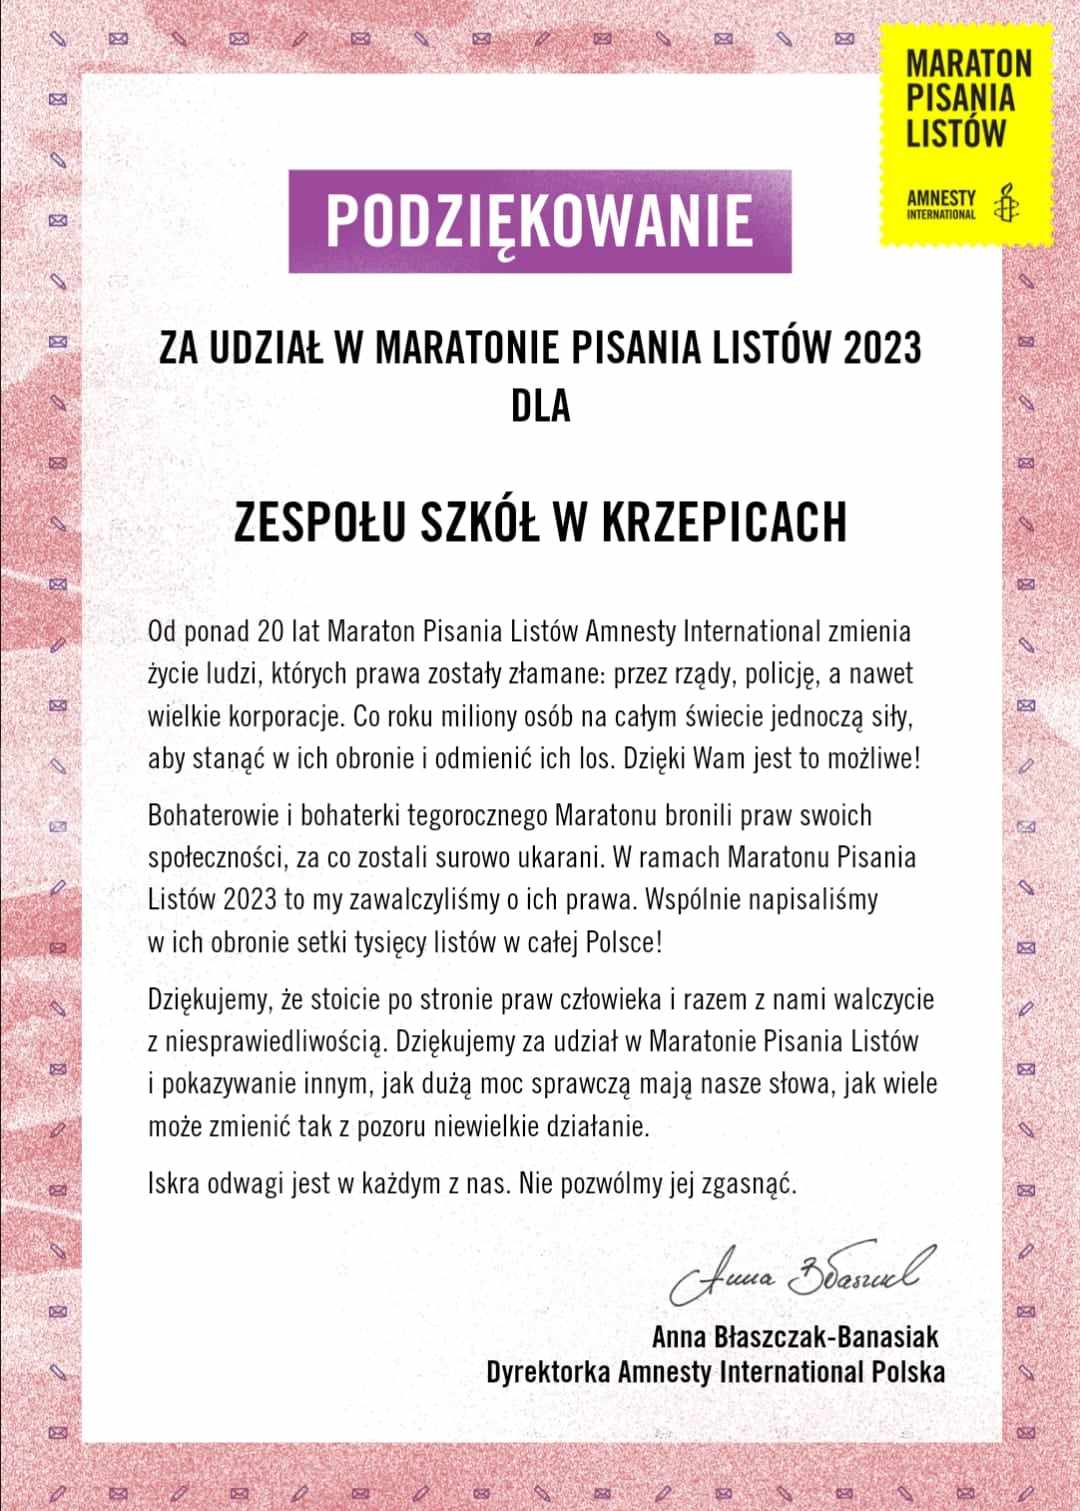 Maratonu Pisania Listów Amnesty International 2023